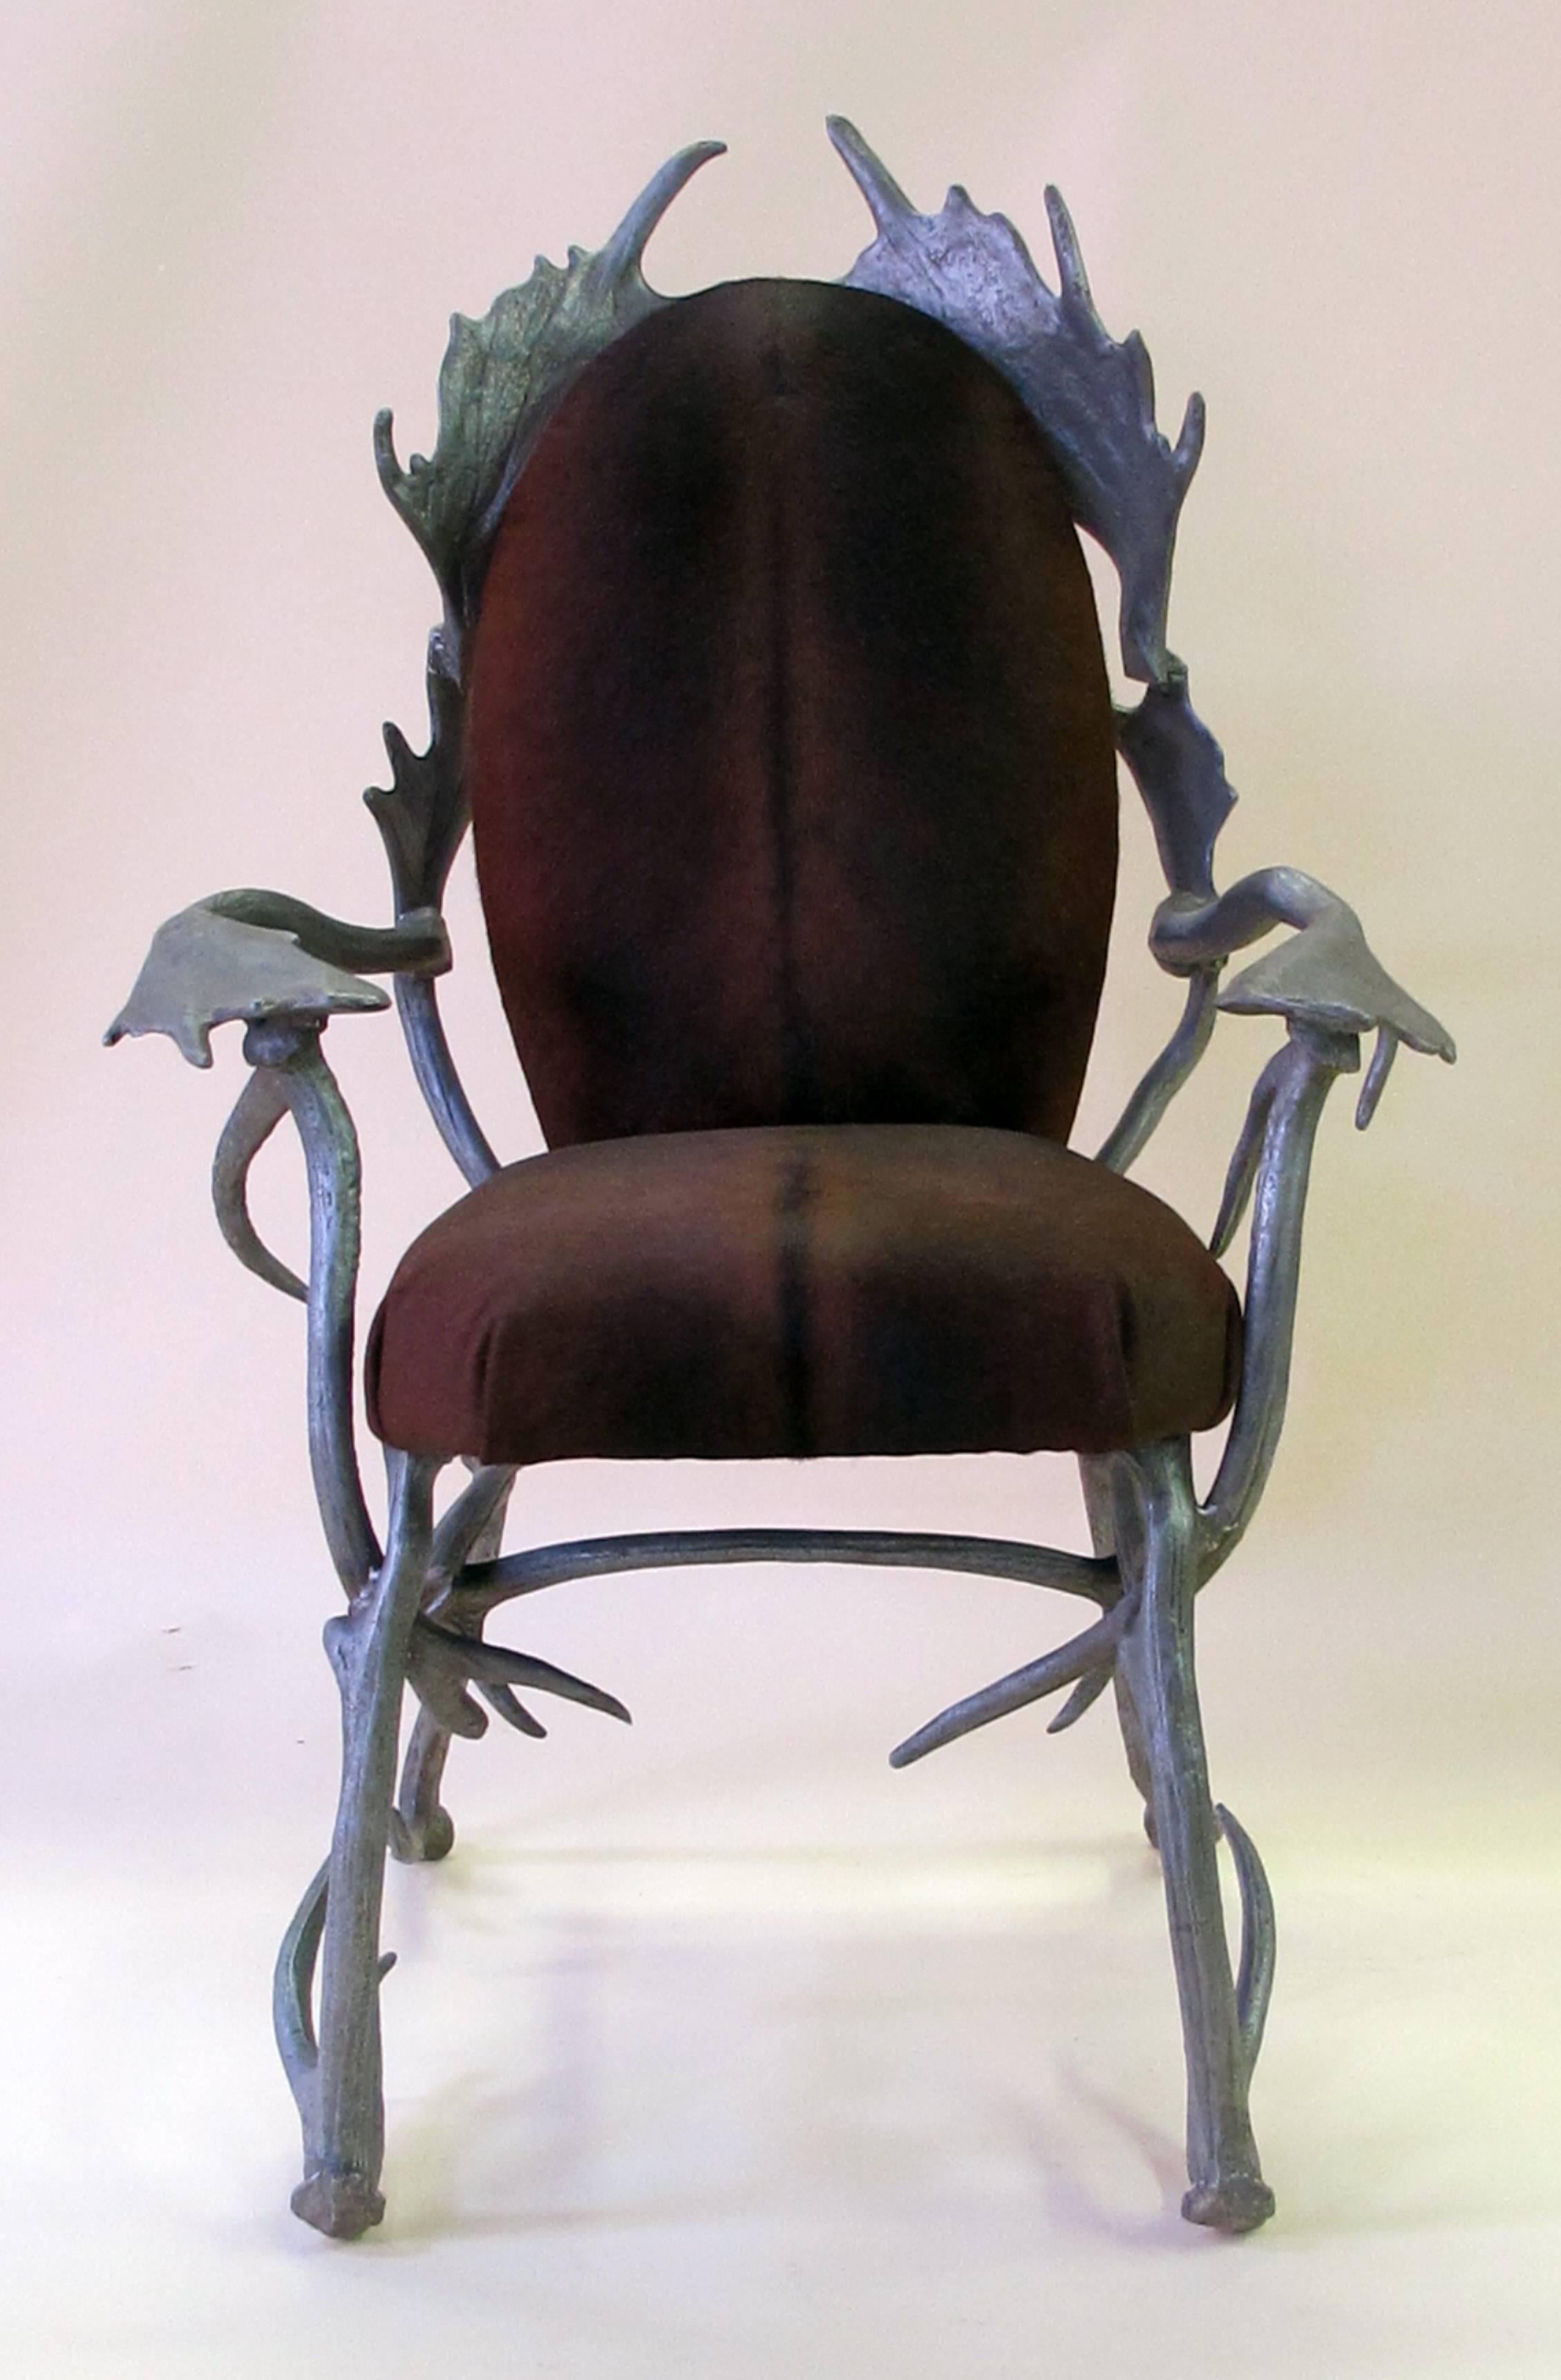 Une paire fantaisiste de fauteuils en bois de cerf en aluminium des années 1970 conçue par Arthur Court, San Francisco (1928-2015) ; un nouveau procédé innovant de moulage de l'aluminium a fait entrer Arthur et Arthur Court Designs dans une nouvelle